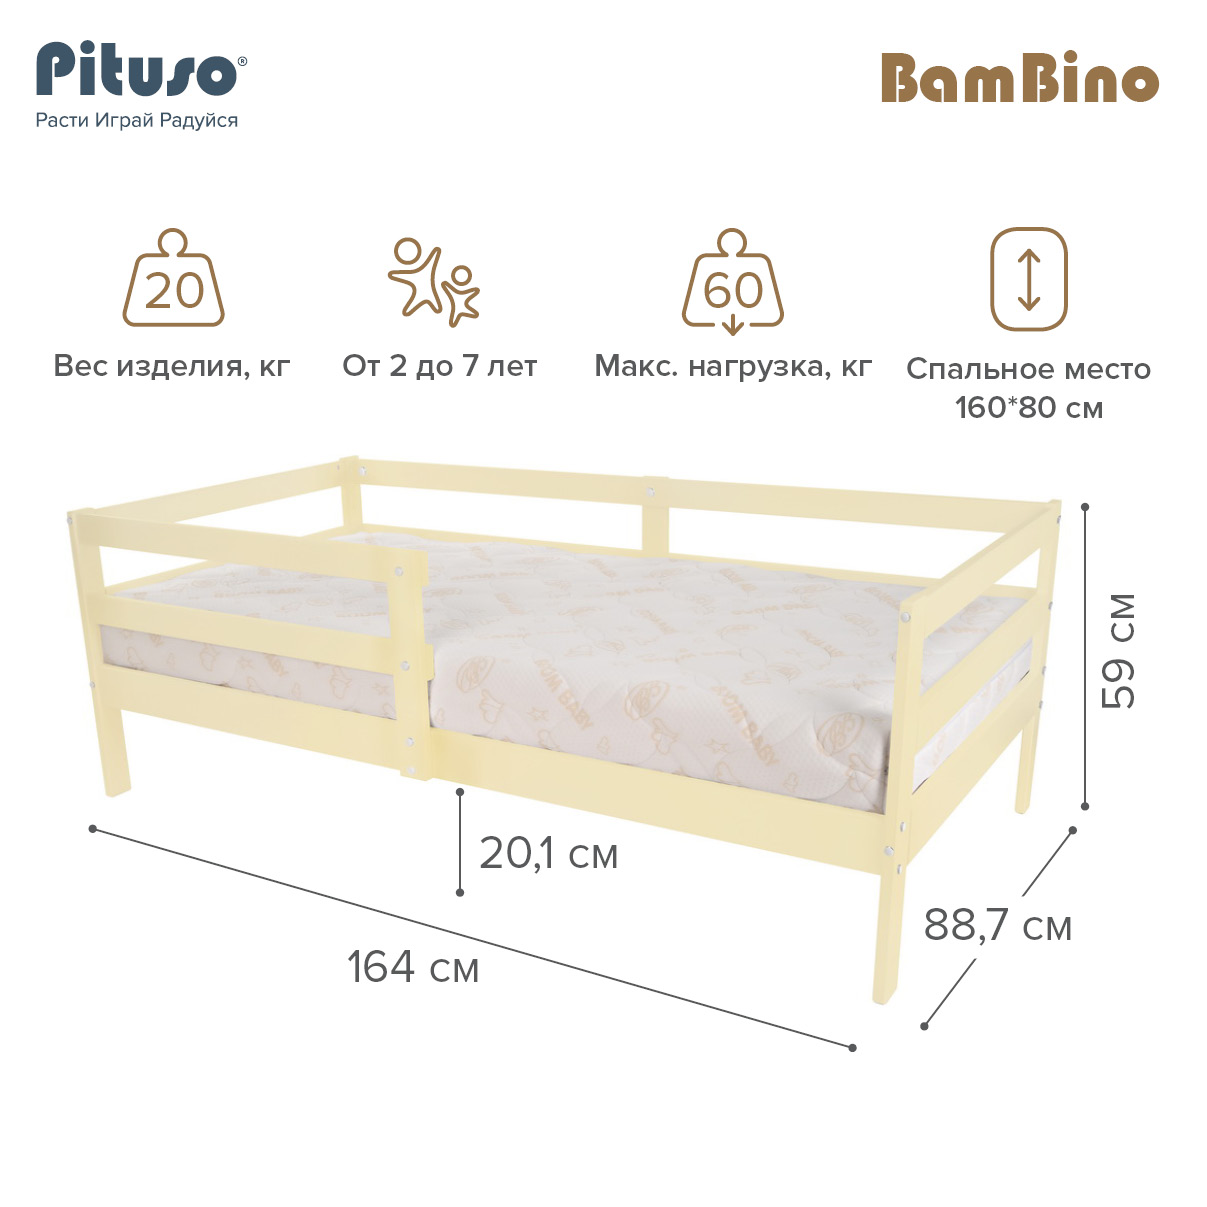 Кровать подростковая Pituso BamBino Ваниль подростковая кровать pituso emilia j 501